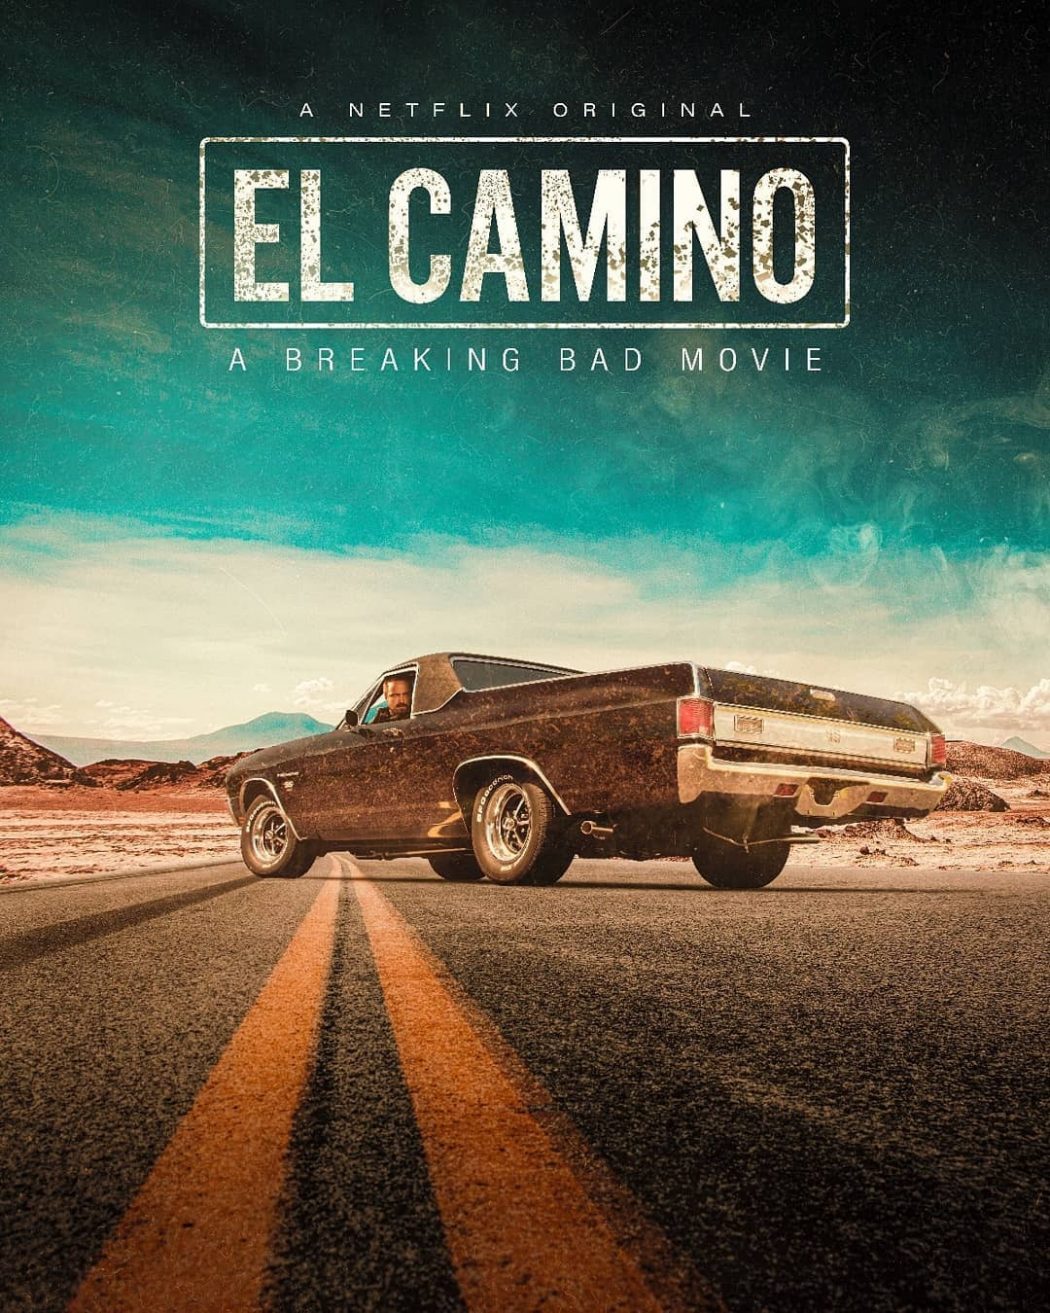 El Camino Un film Breaking Bad (Streaming, Synopsis, Casting, Bande